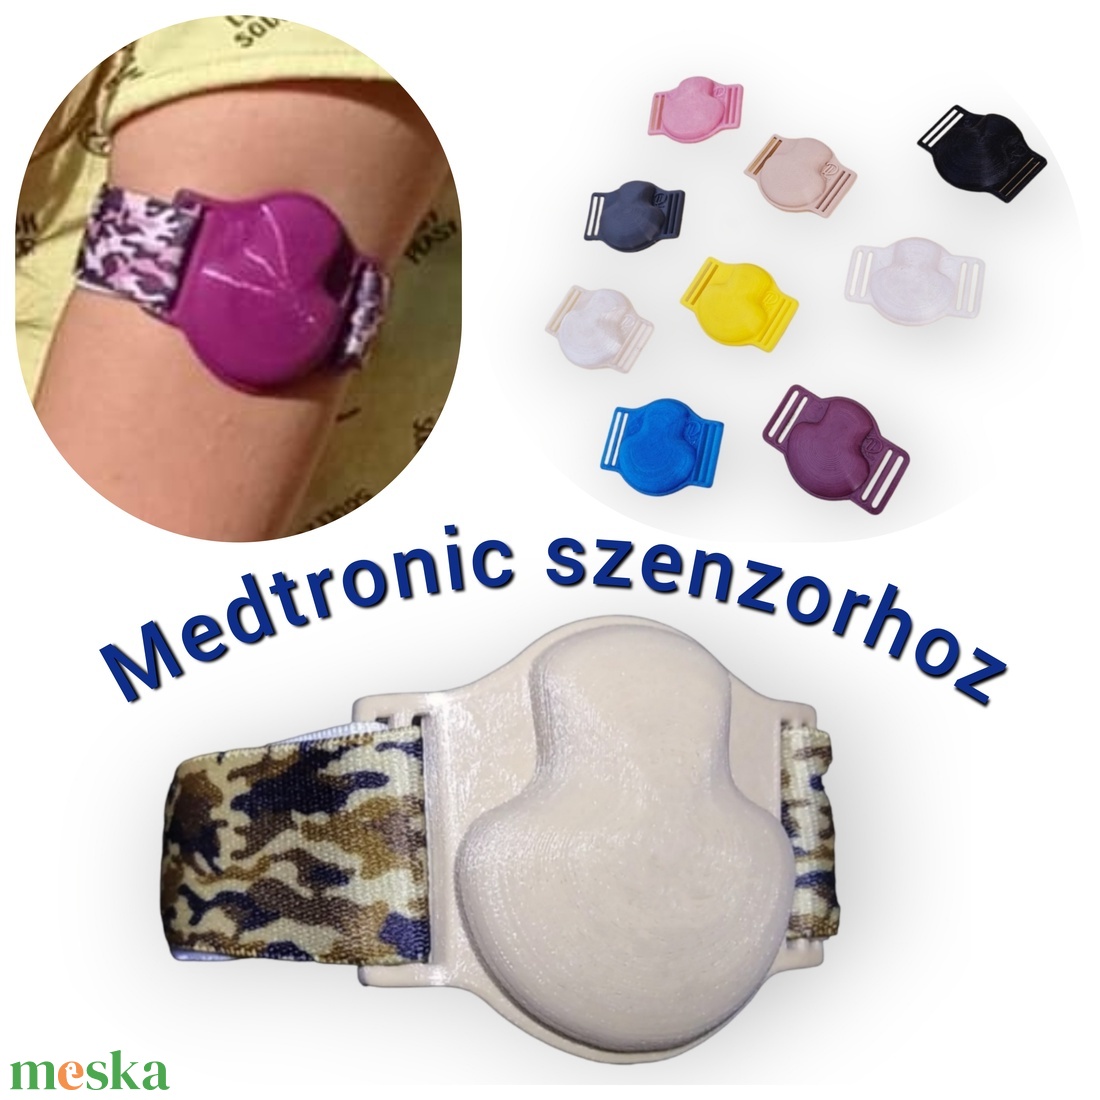 Medtronic szenzorhoz rugalmas szenzorrögzítő karpánt (rugalmas, teljes fedésű keret) szenzorpánt - ruha & divat - öv & övcsat - egyéb kellék - Meska.hu